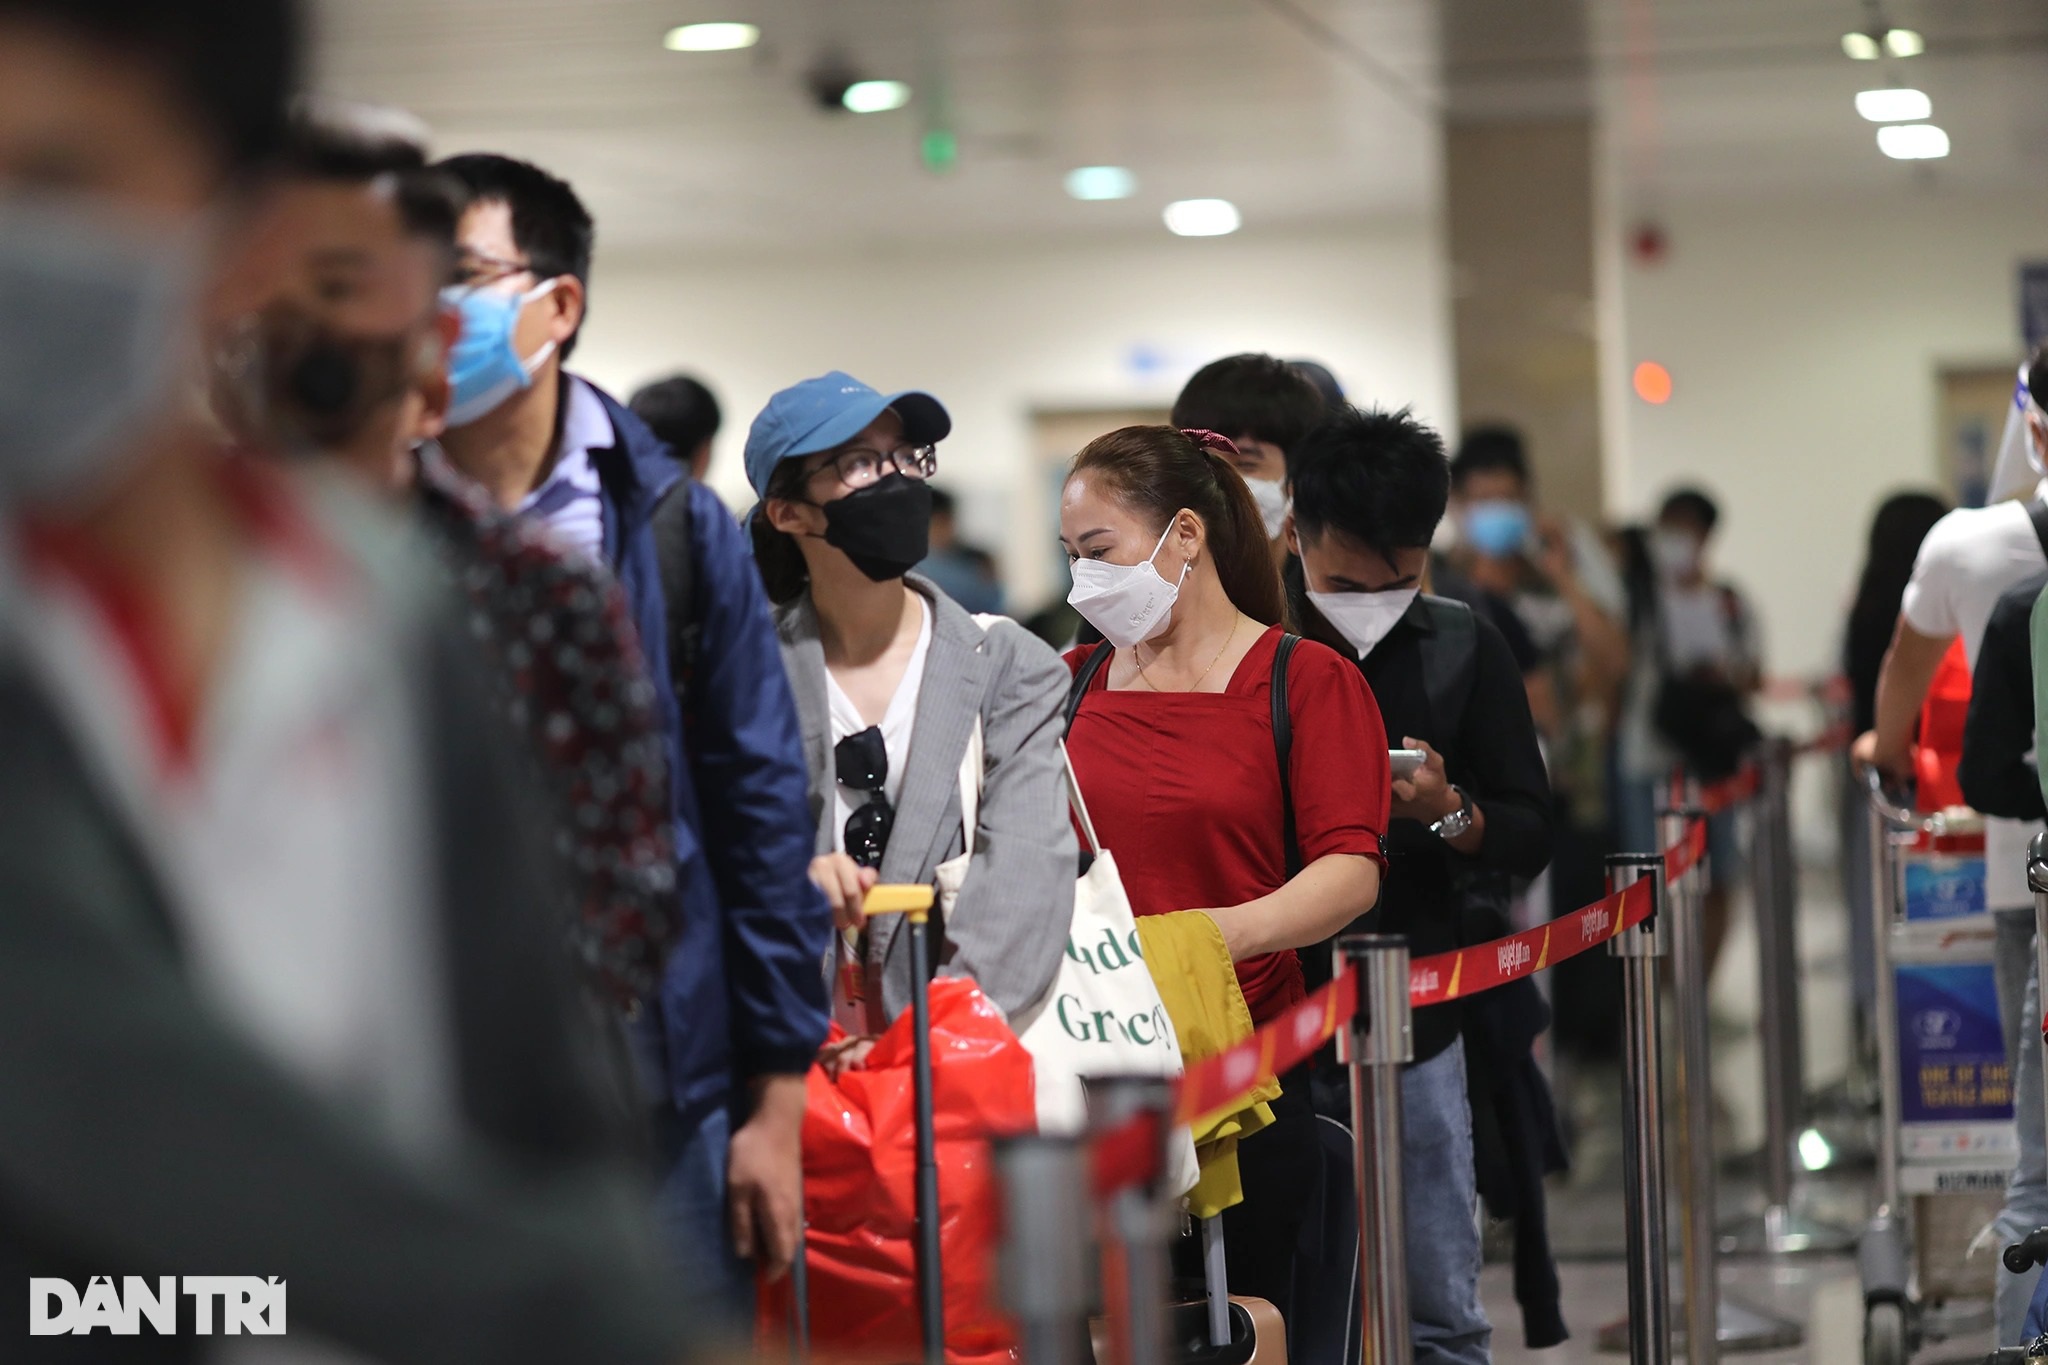 Sân bay Tân Sơn Nhất chật kín người, hành khách vật vờ chờ chuyến bay - 2